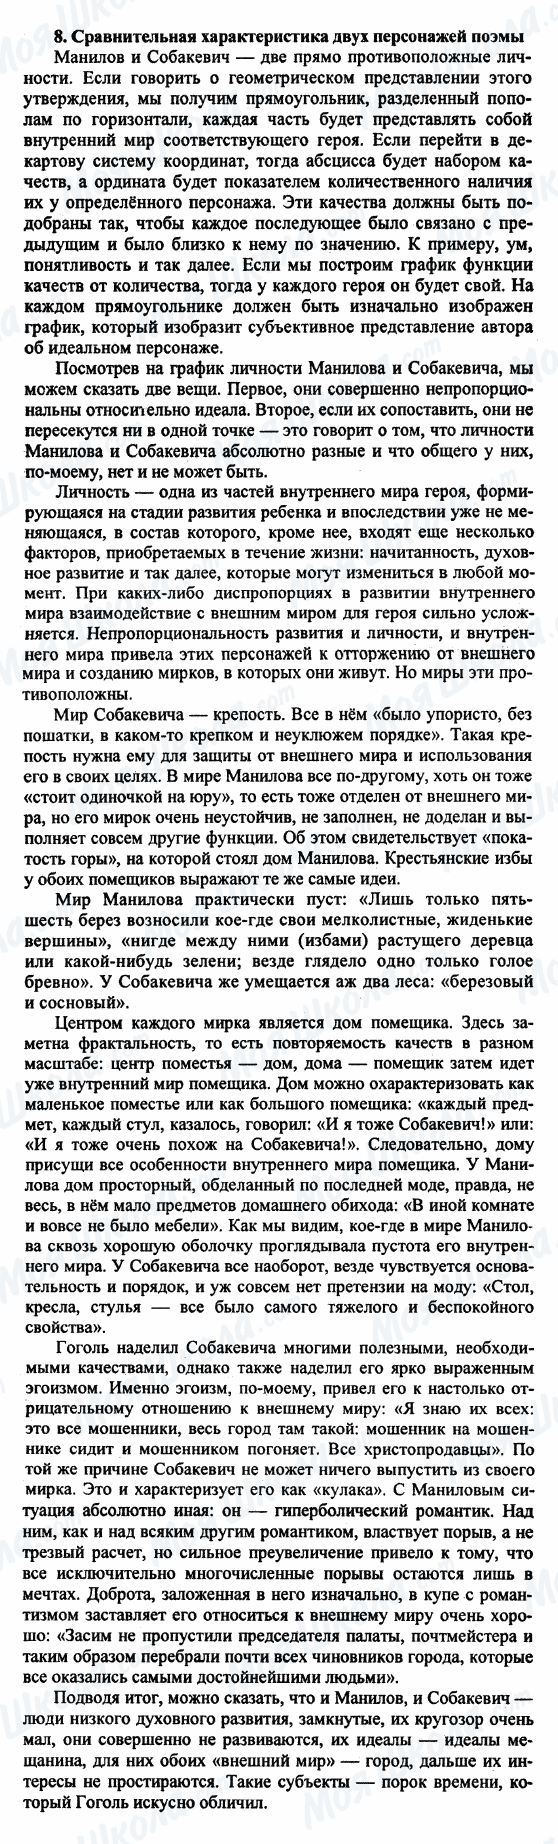 ГДЗ Русская литература 9 класс страница 8